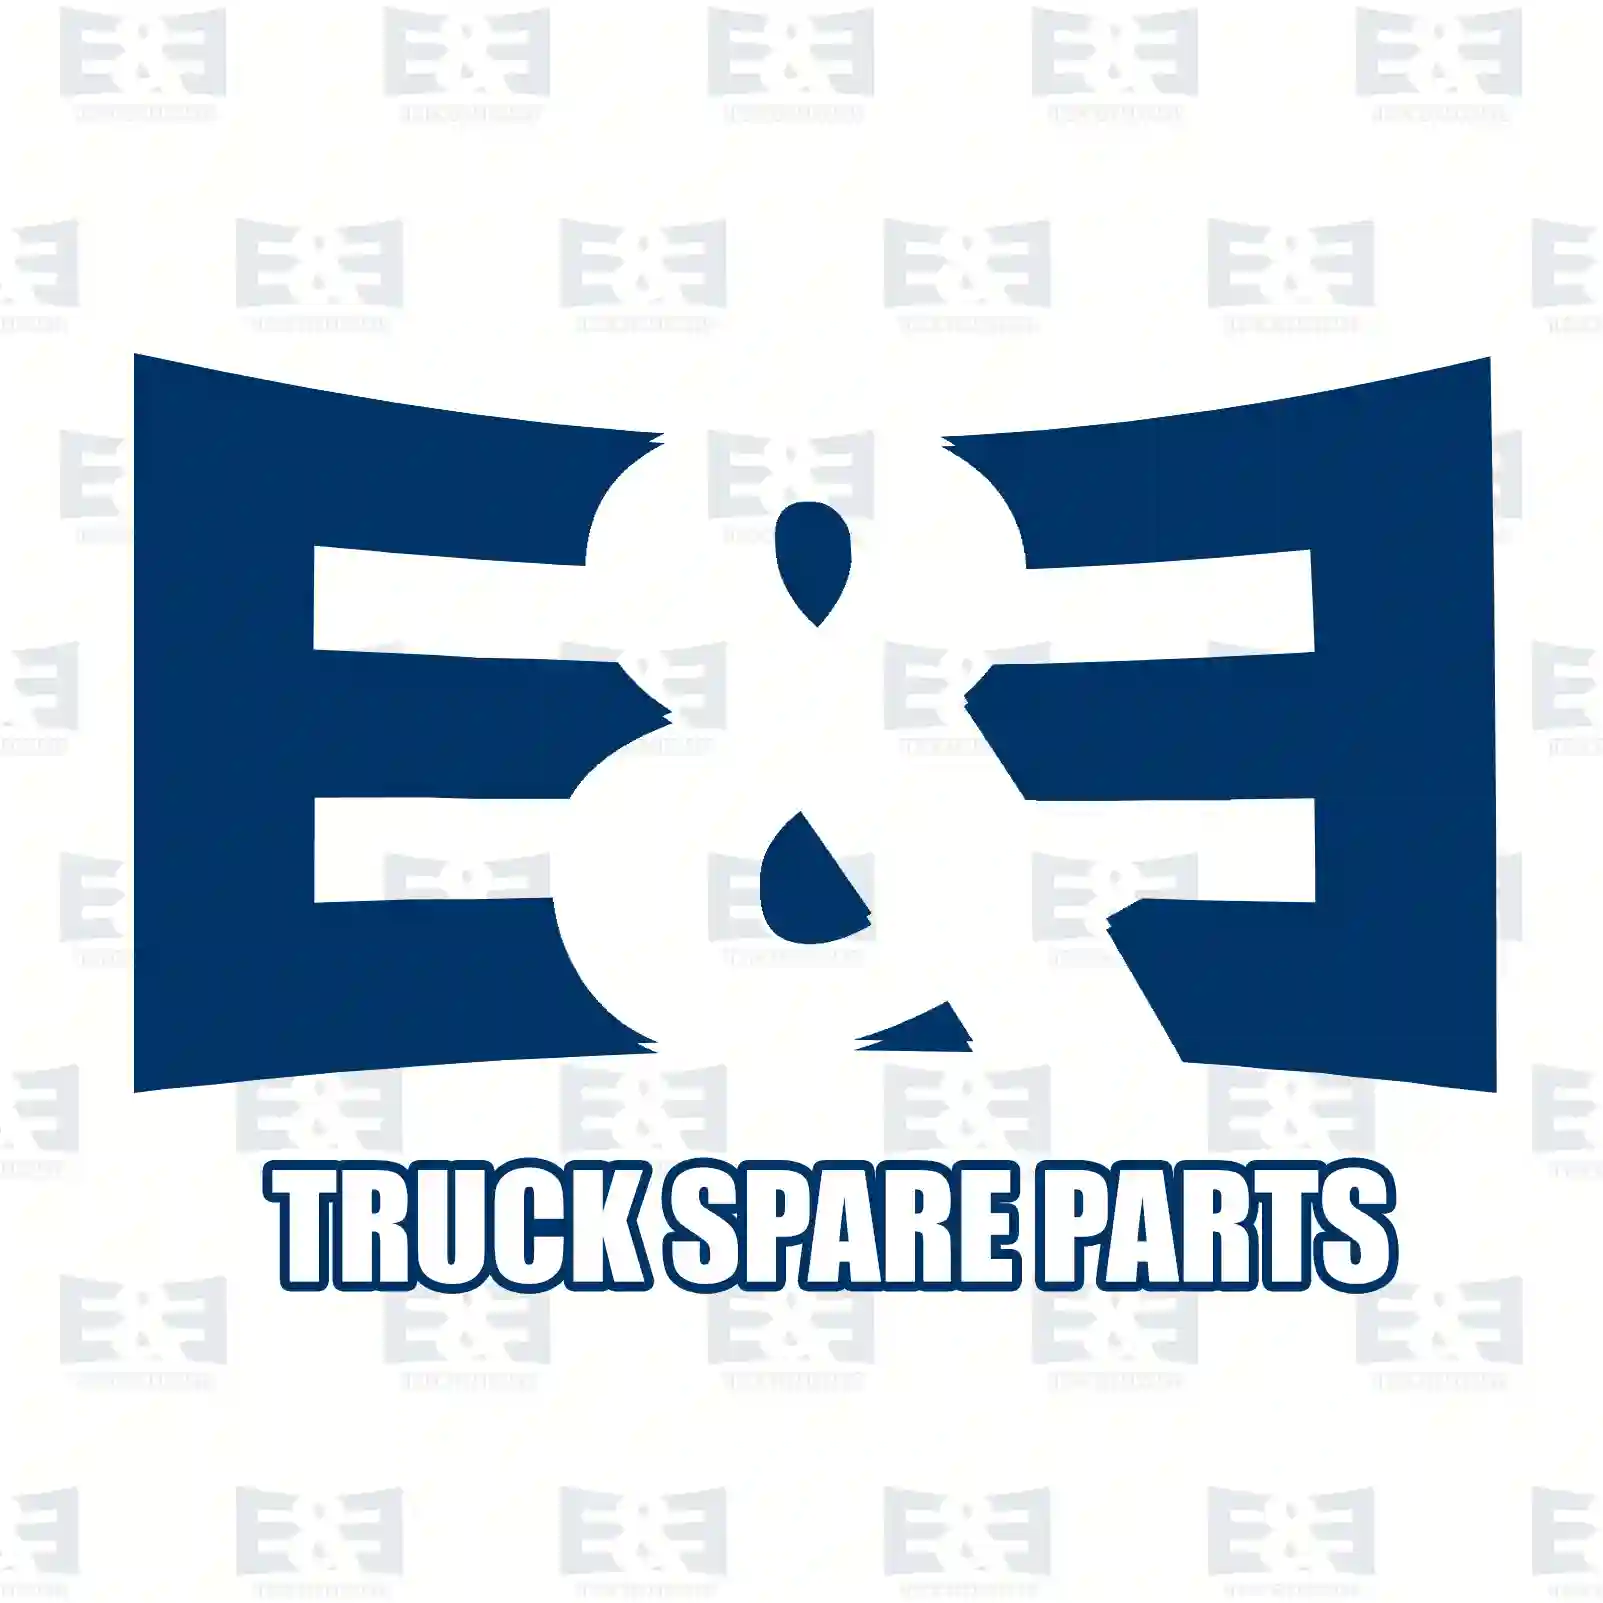 Fan with clutch, 2E2203183, 22056206, 0022056 ||  2E2203183 E&E Truck Spare Parts | Truck Spare Parts, Auotomotive Spare Parts Fan with clutch, 2E2203183, 22056206, 0022056 ||  2E2203183 E&E Truck Spare Parts | Truck Spare Parts, Auotomotive Spare Parts